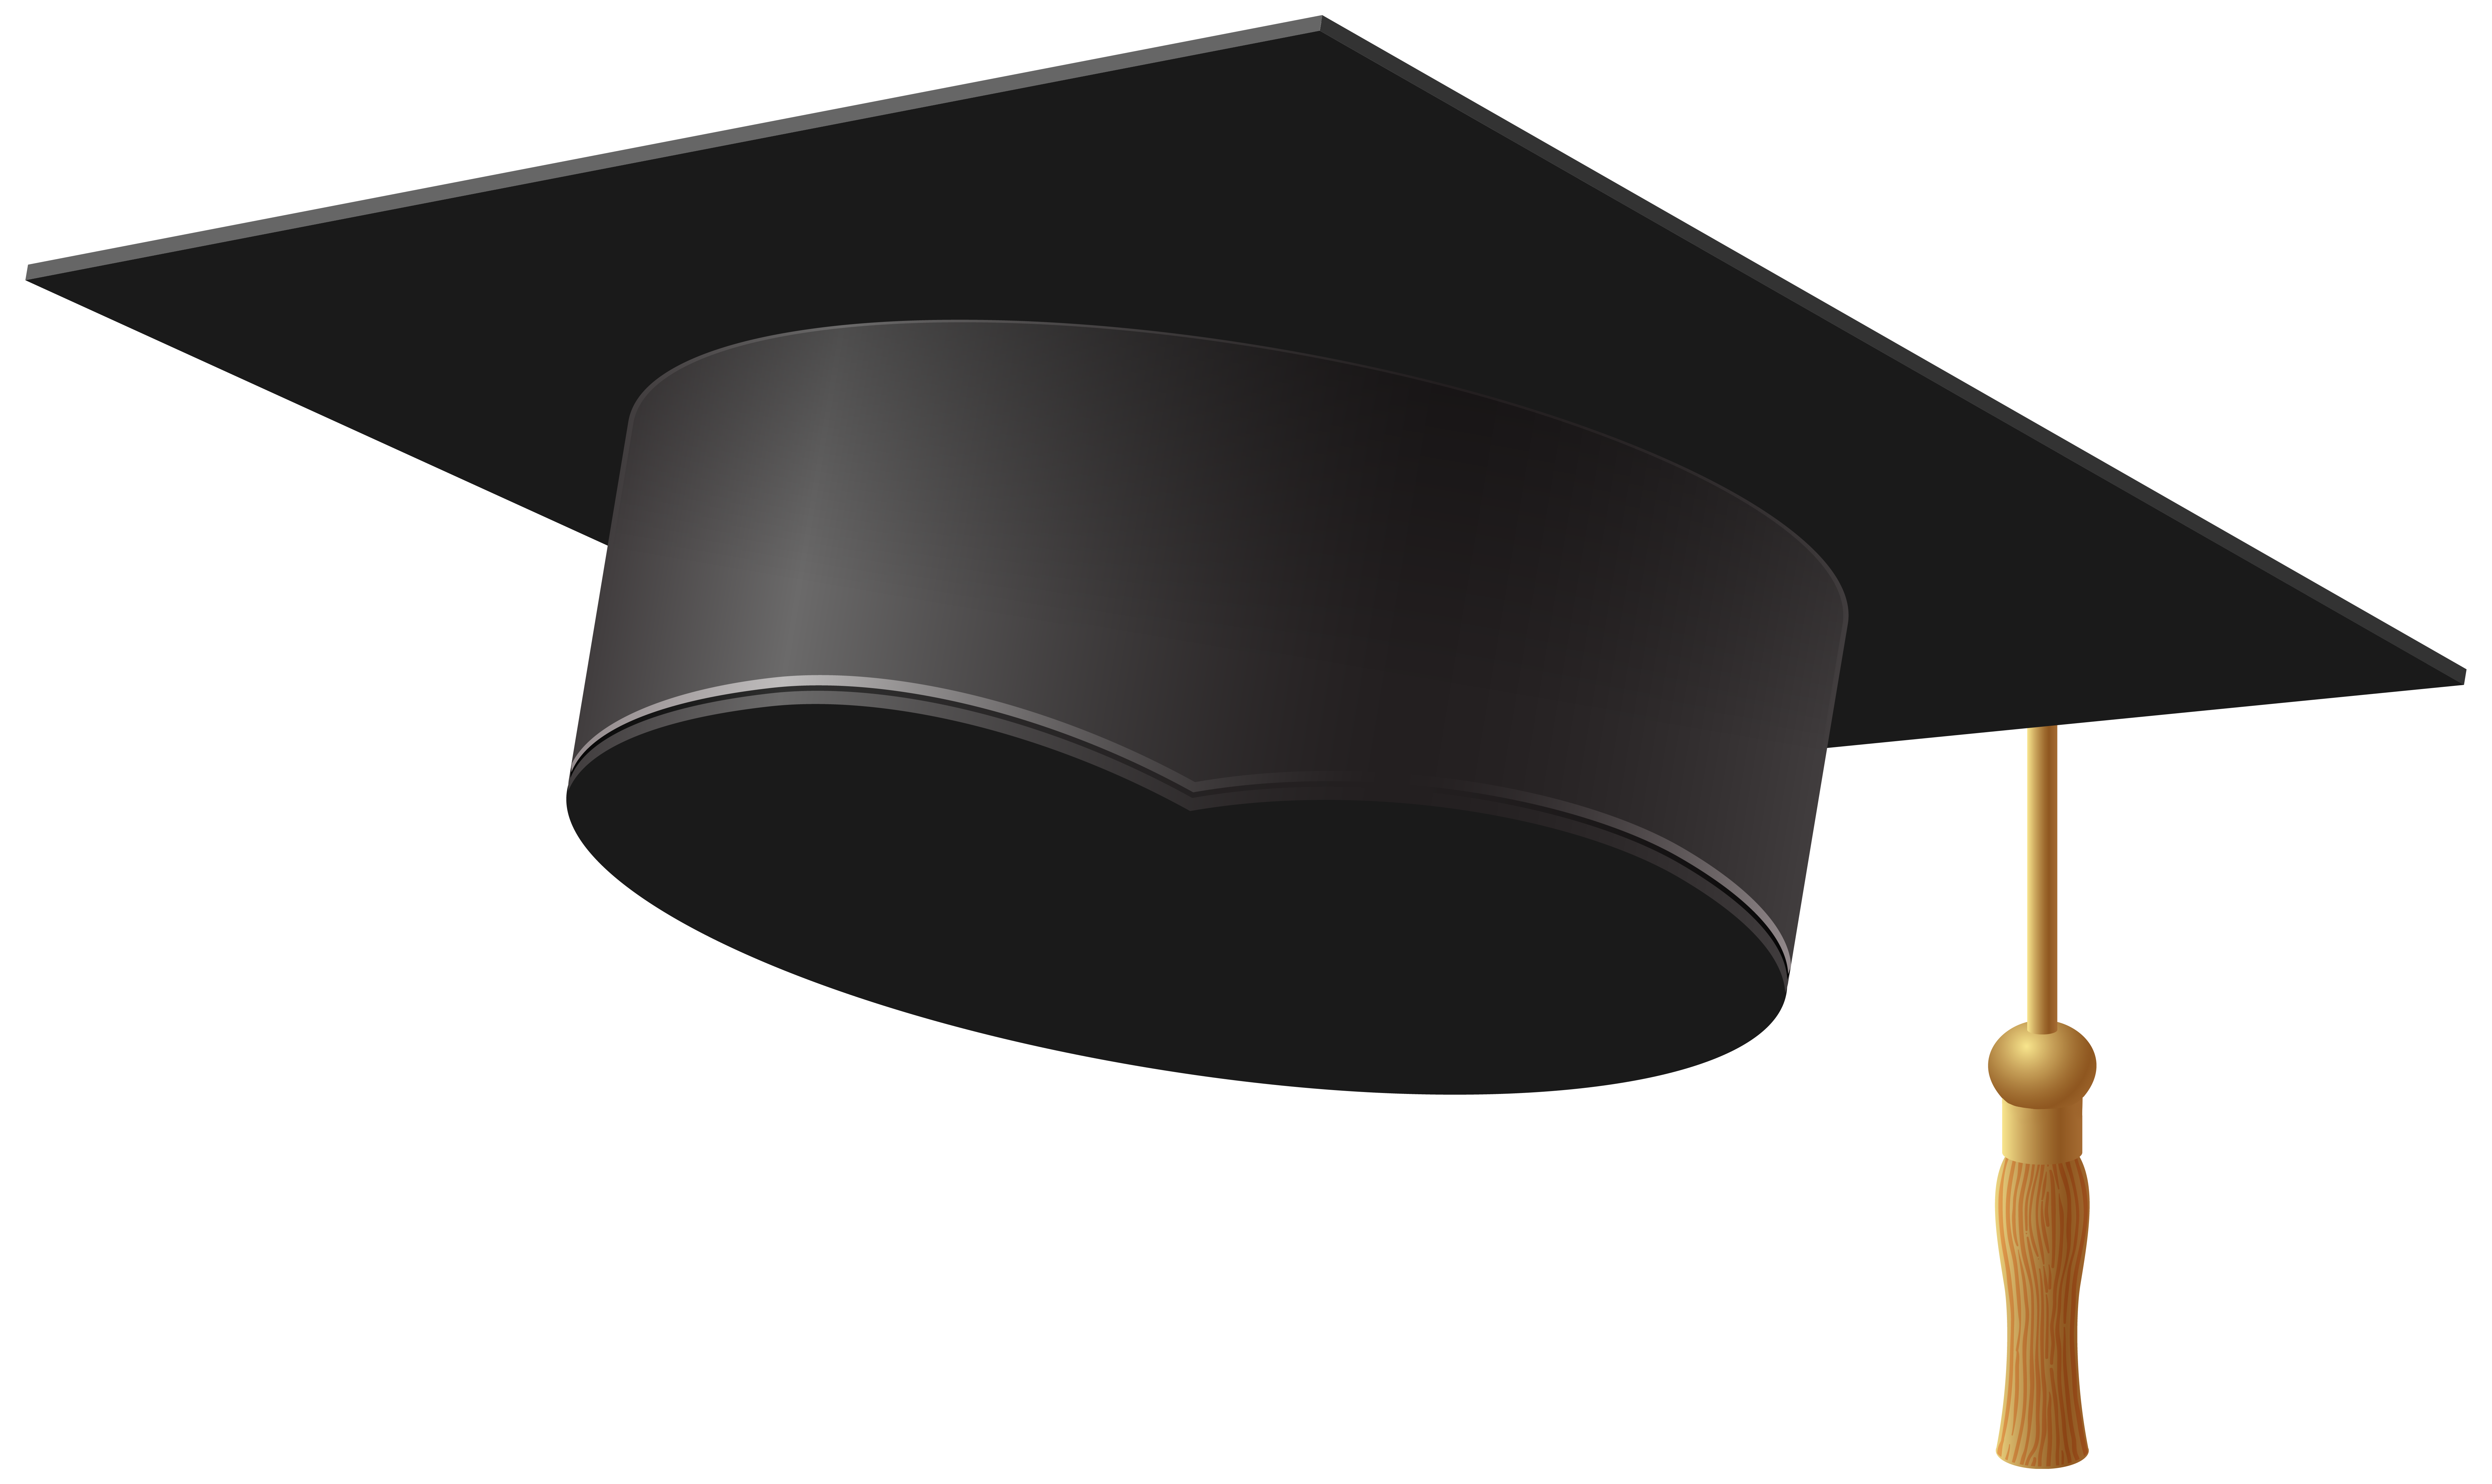 Convocation cap clip art - Graduation Hat Clipart